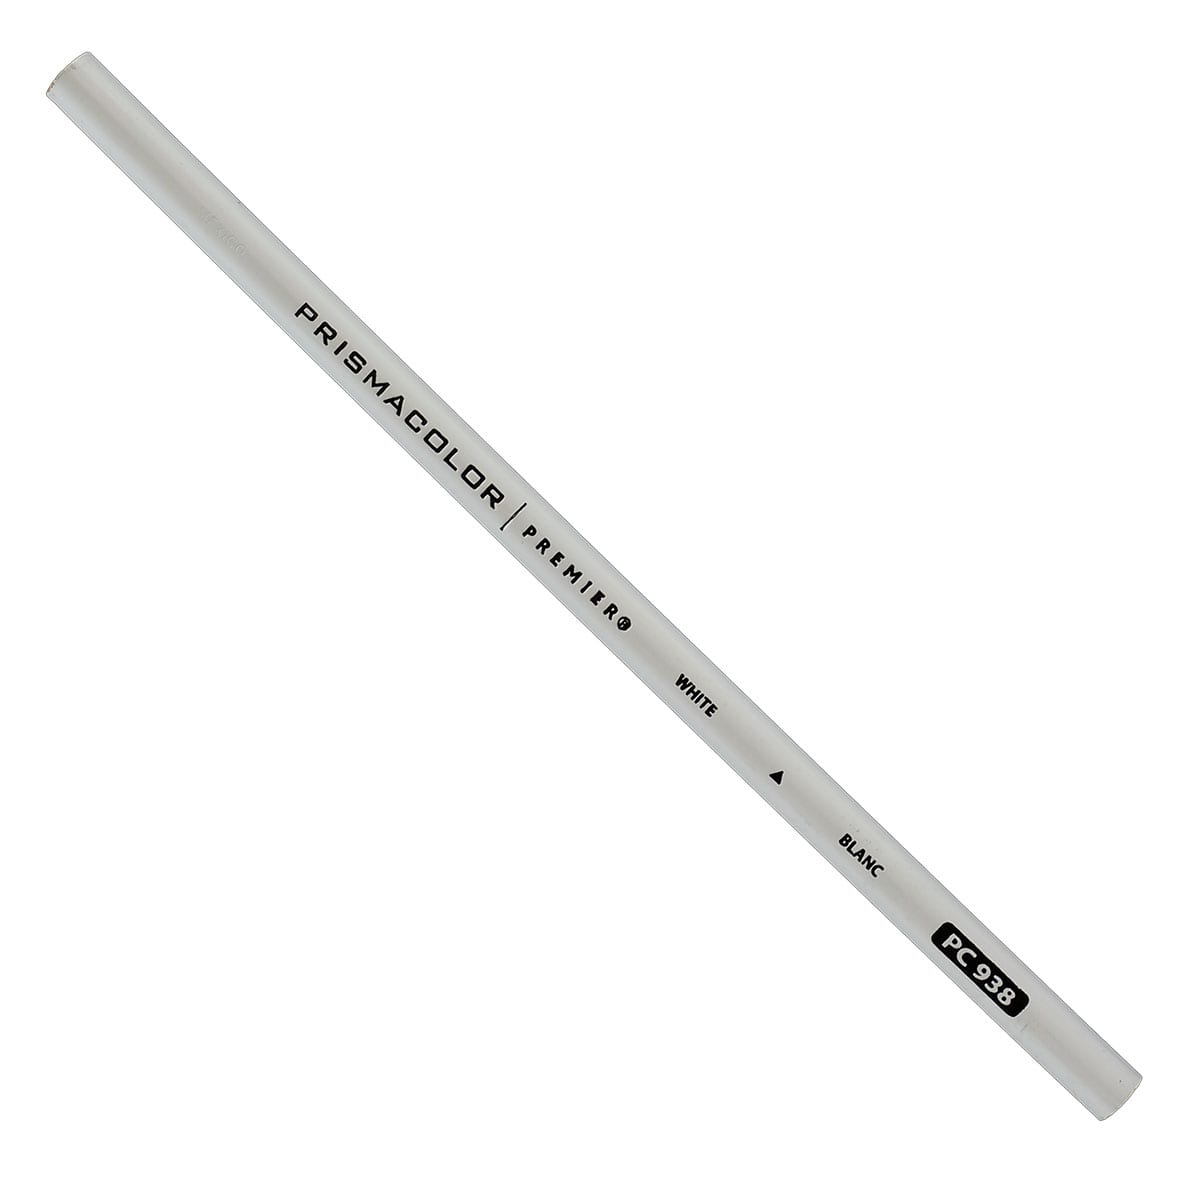 Skin Color Prismacolor Pencils, Prismacolor White Pencils